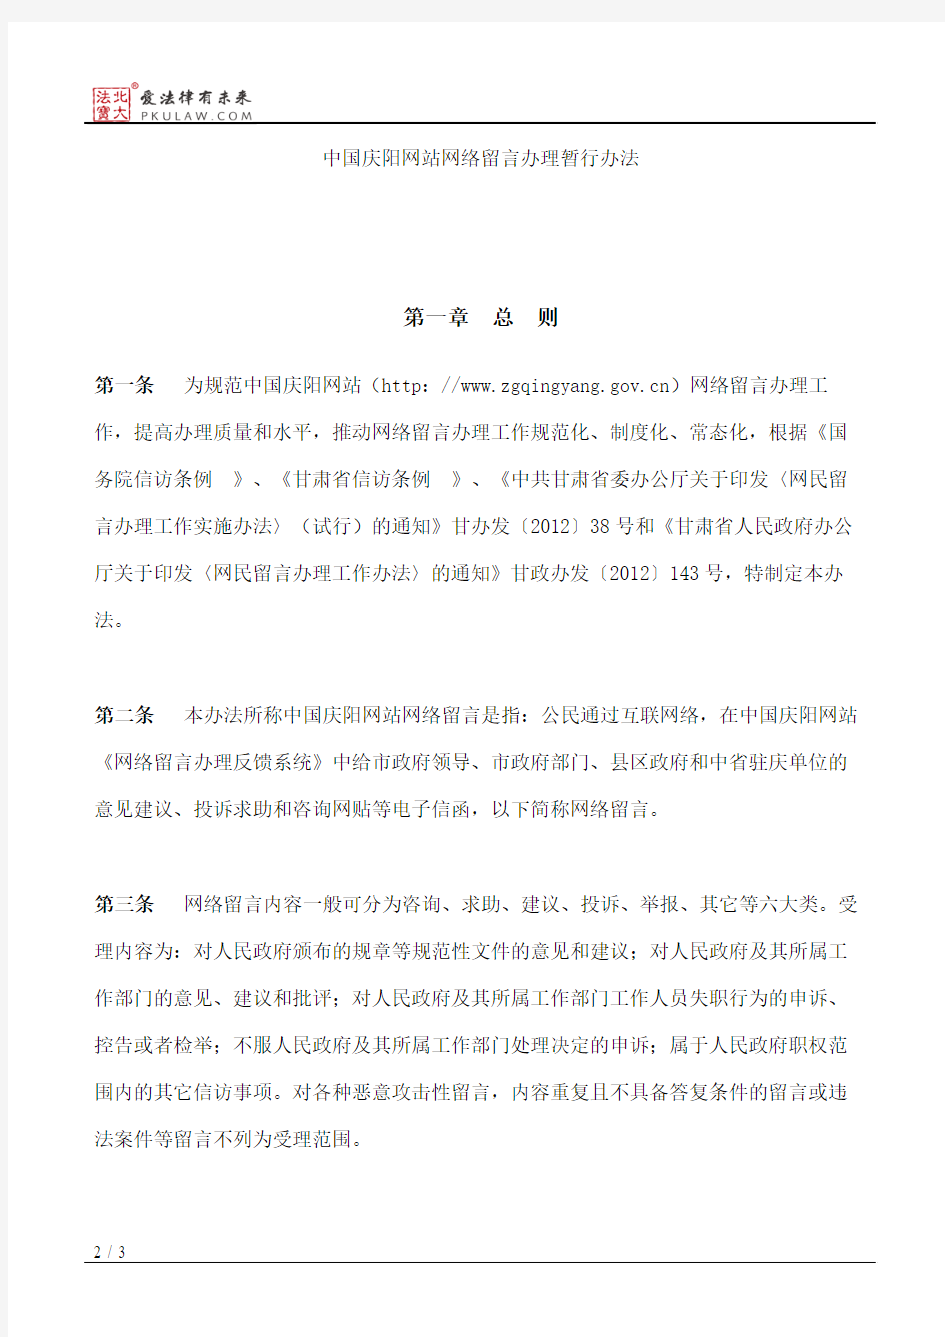 庆阳市人民政府办公室关于印发中国庆阳网站网络留言办理暂行办法的通知